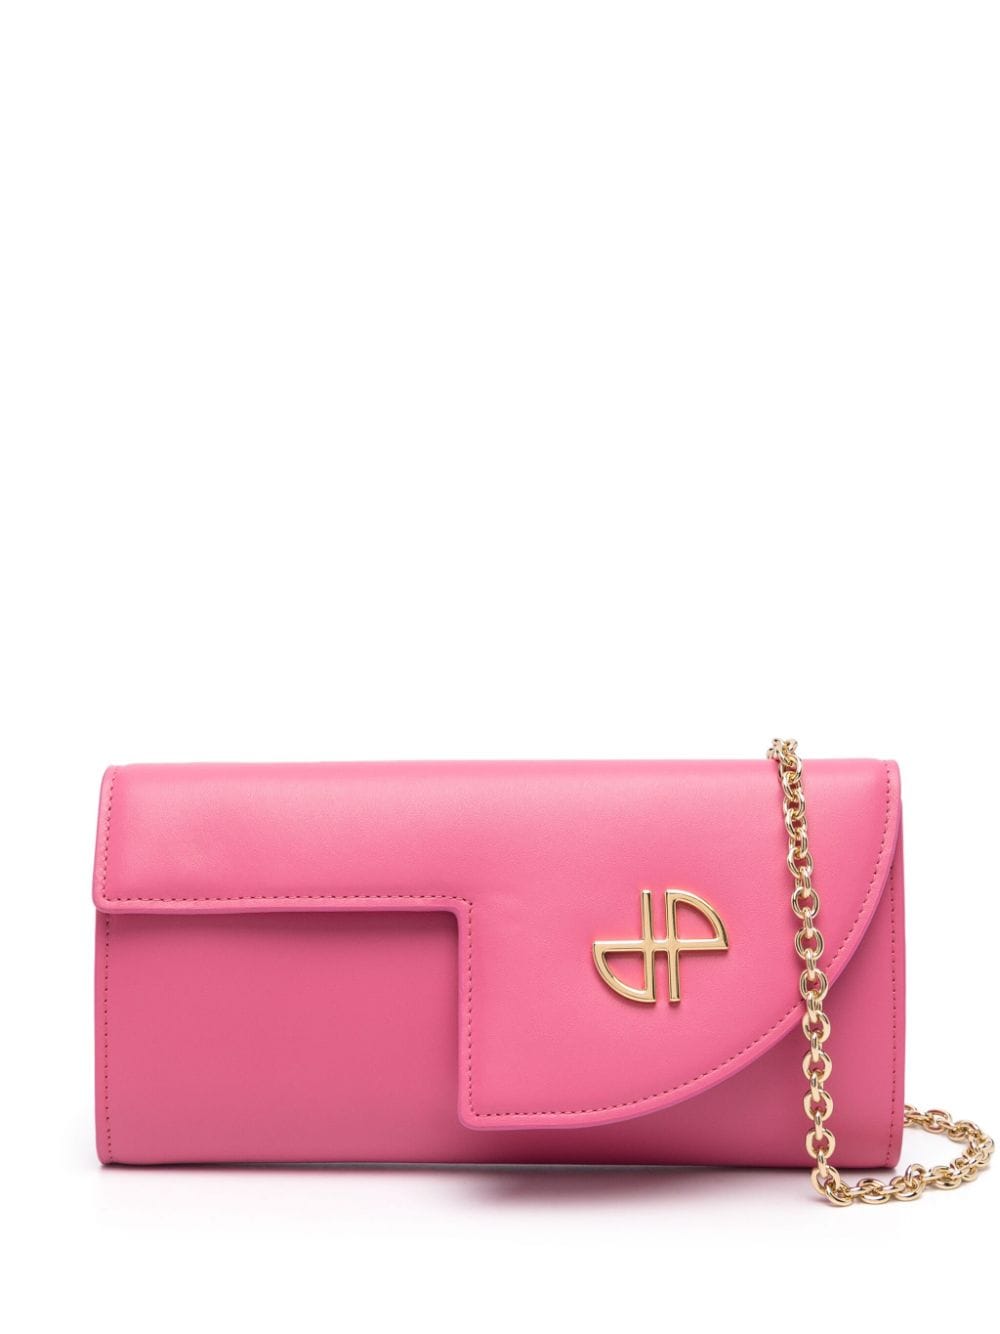 Patou Jp Clutch Bag In Pink